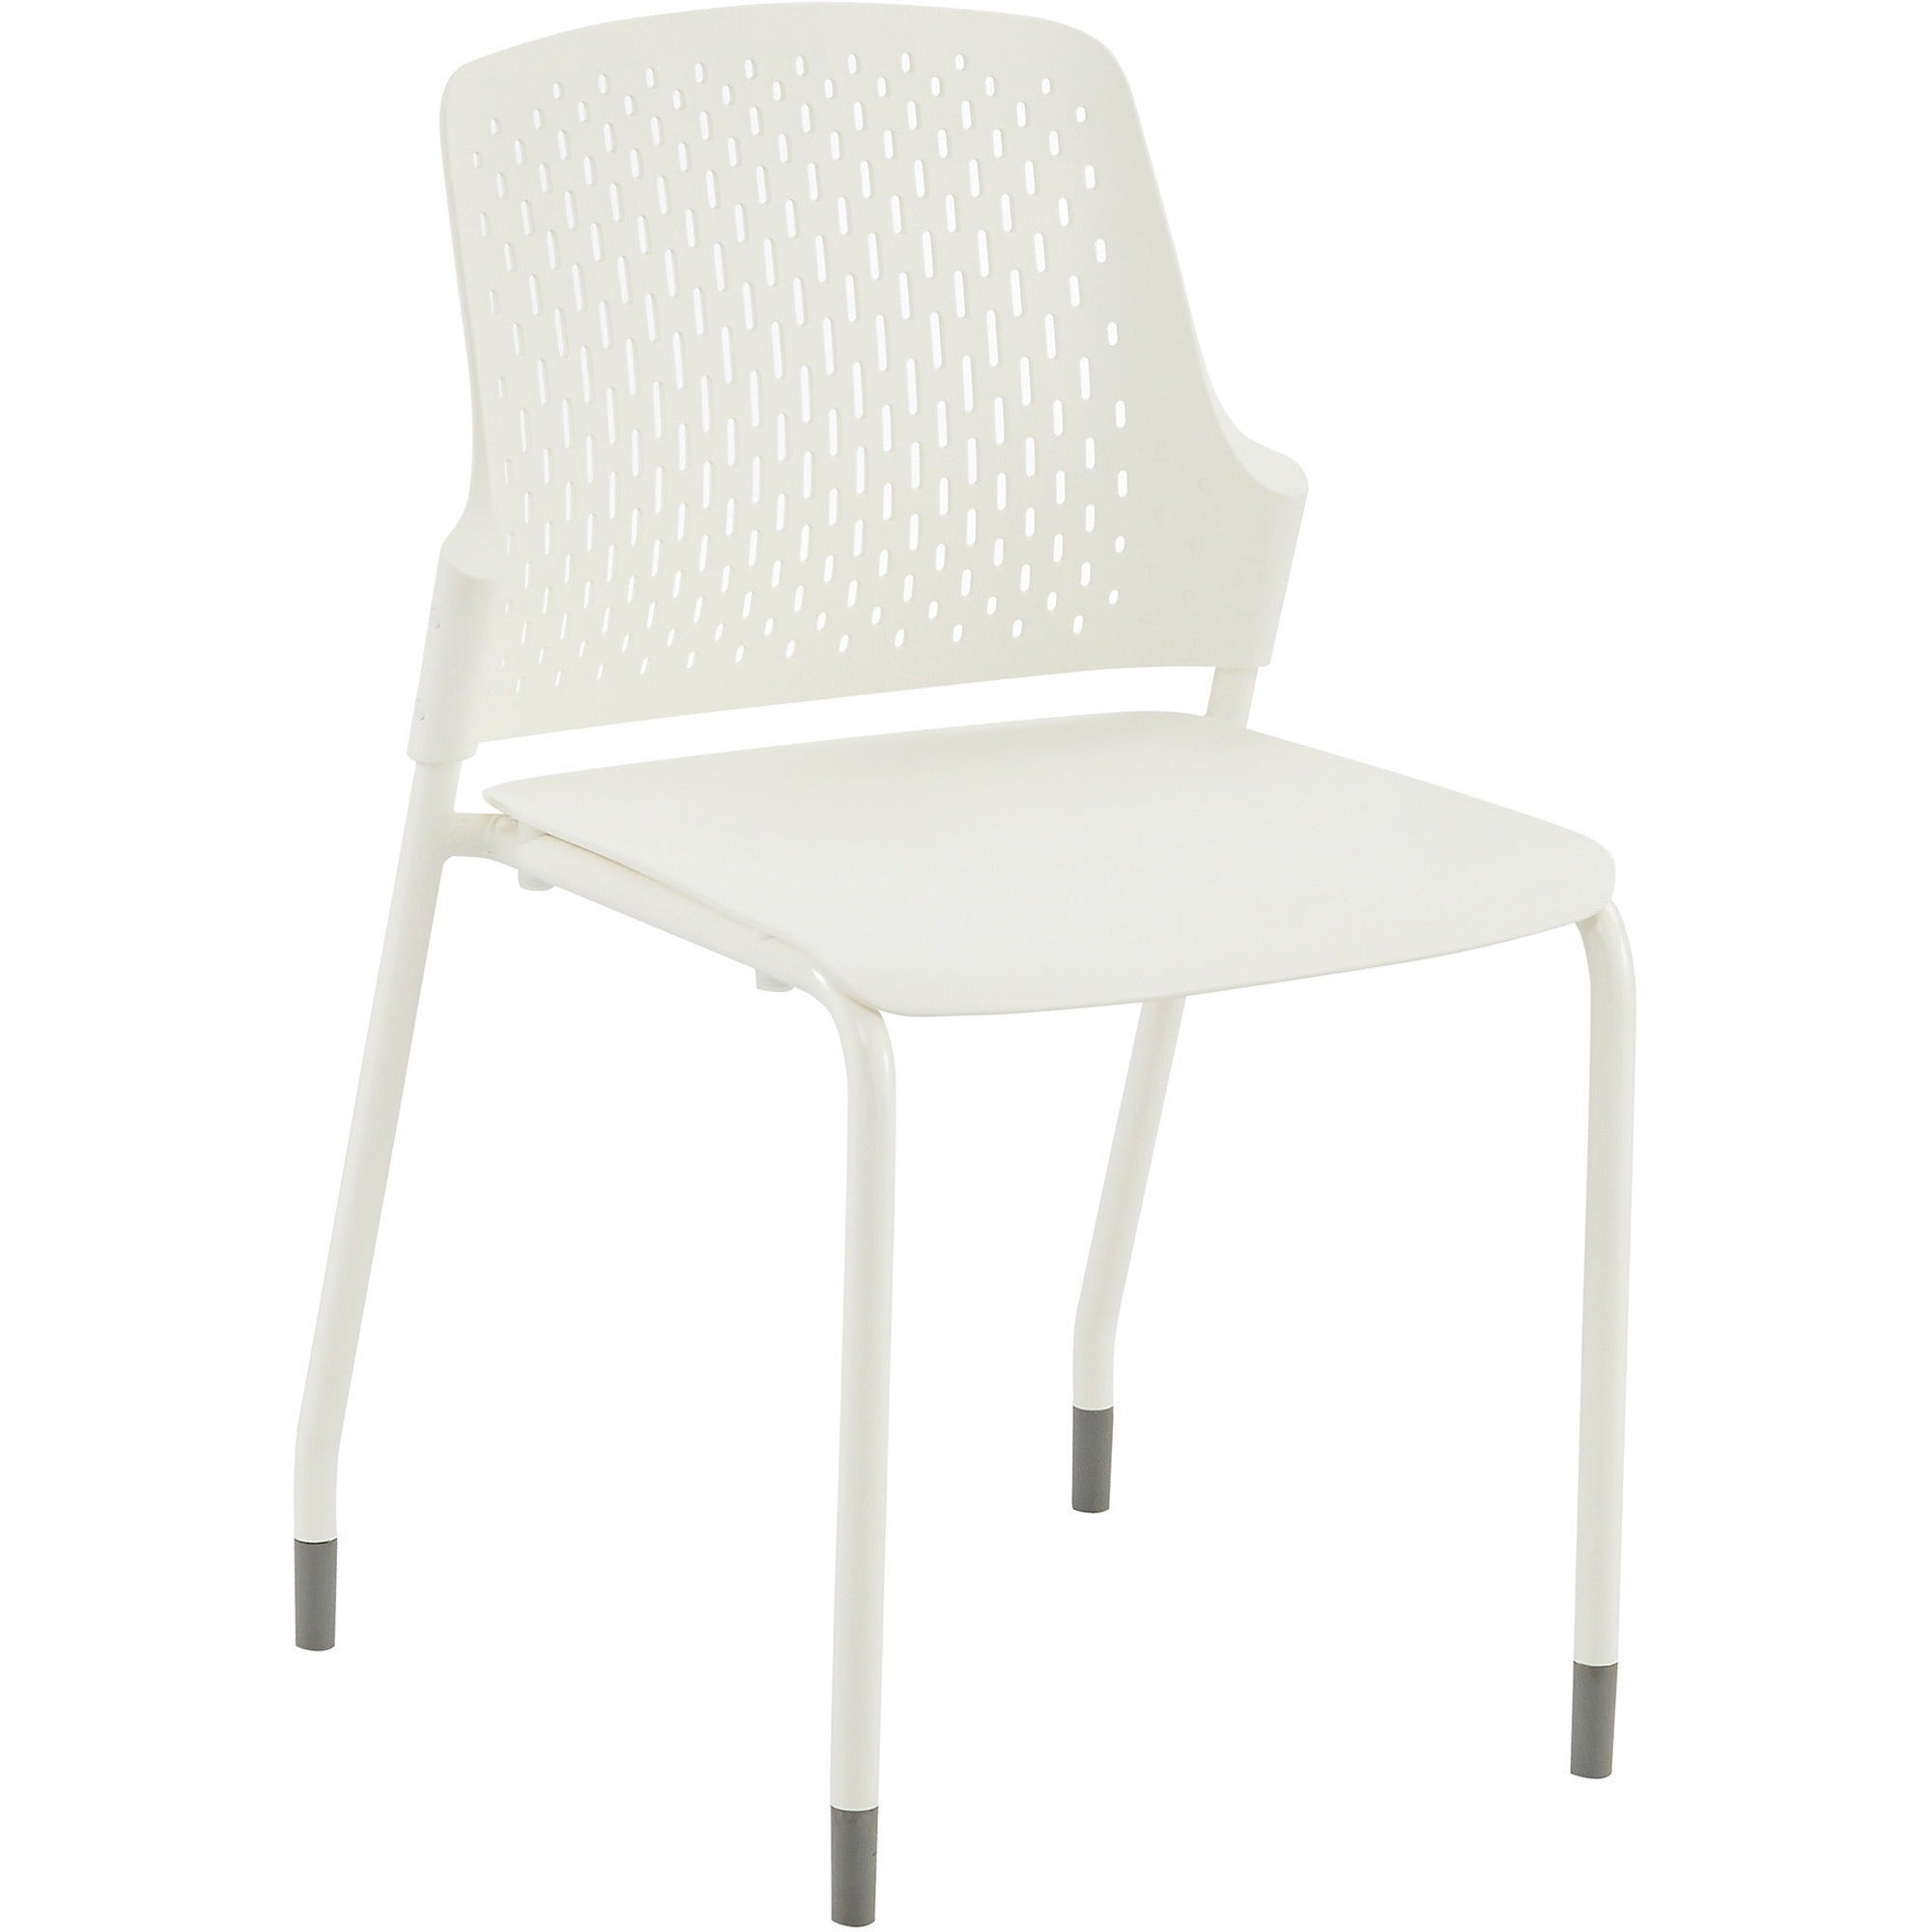 safco-next-stack-chair-white-polypropylene-seat-white-polypropylene-back-tubular-steel-frame-four-legged-base-4-carton_saf4287wh - 1